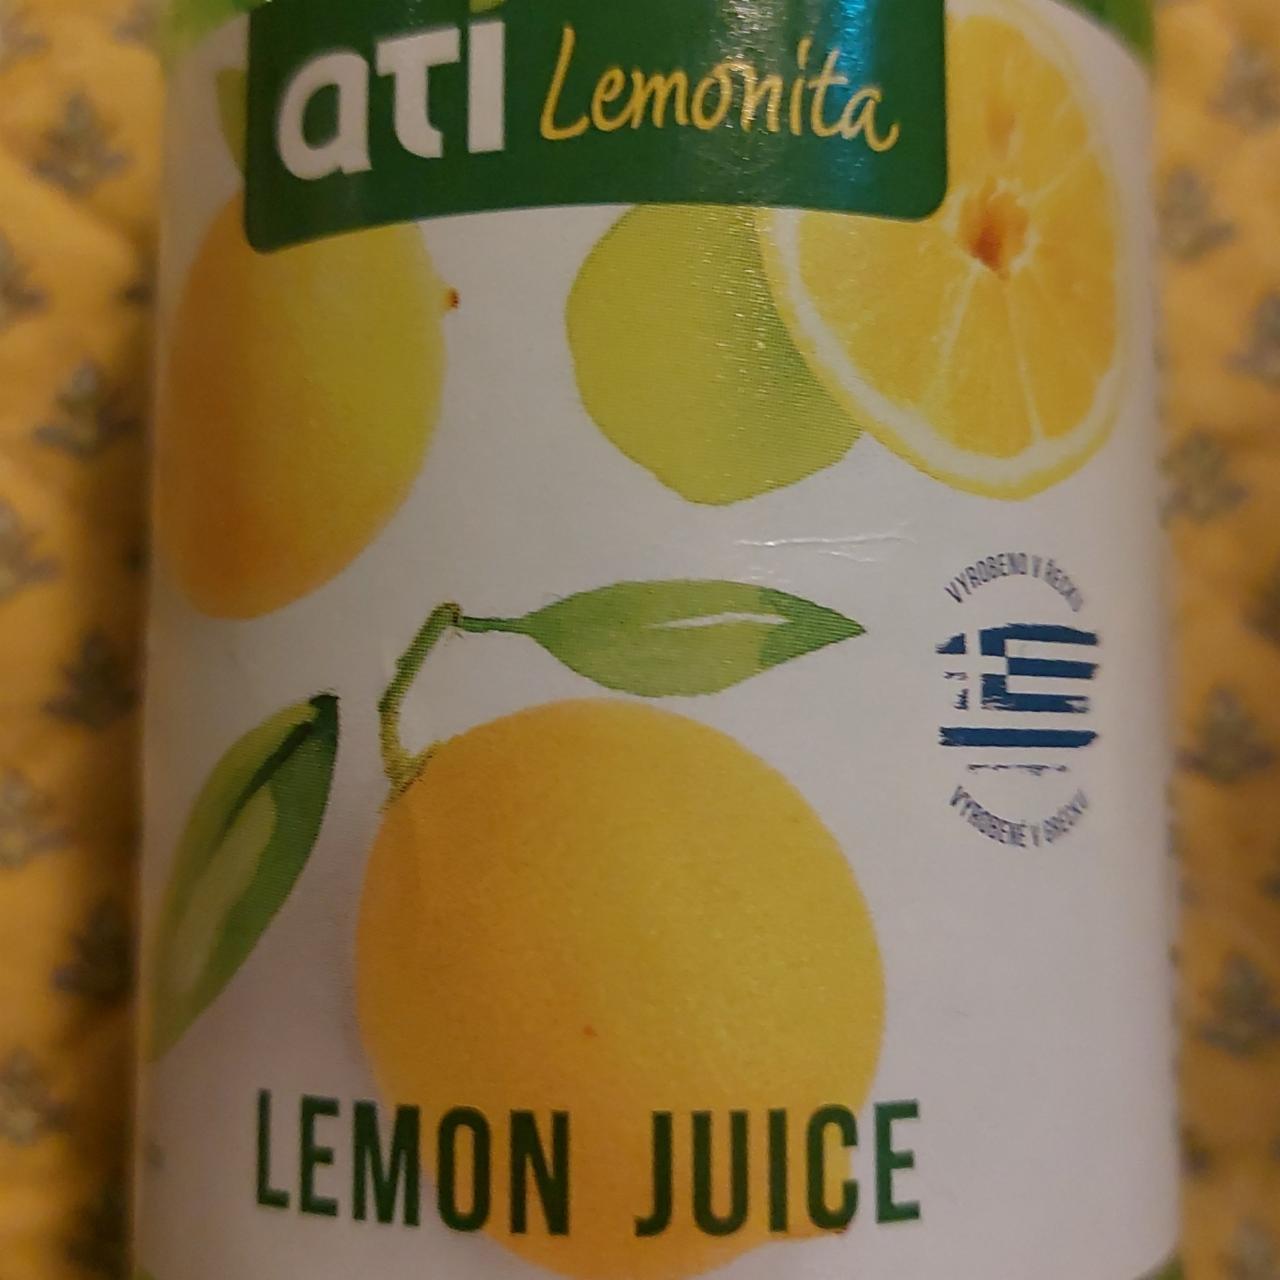 Fotografie - Lemon juice Ati Lemonita